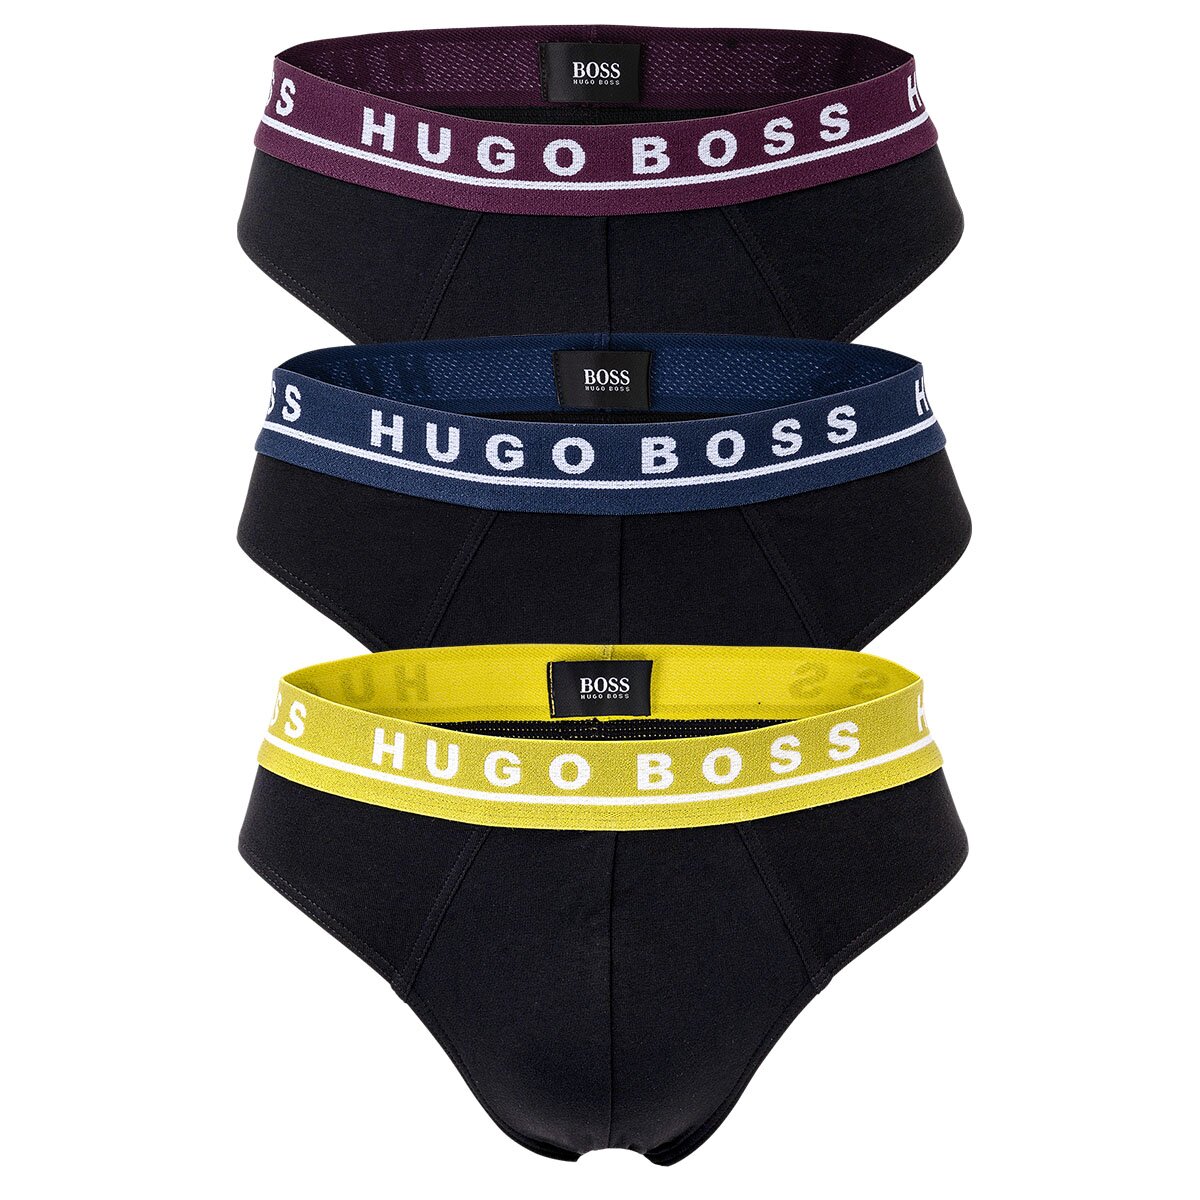 HUGO BOSS Herren Slips im 3er Pack, 32,95 €